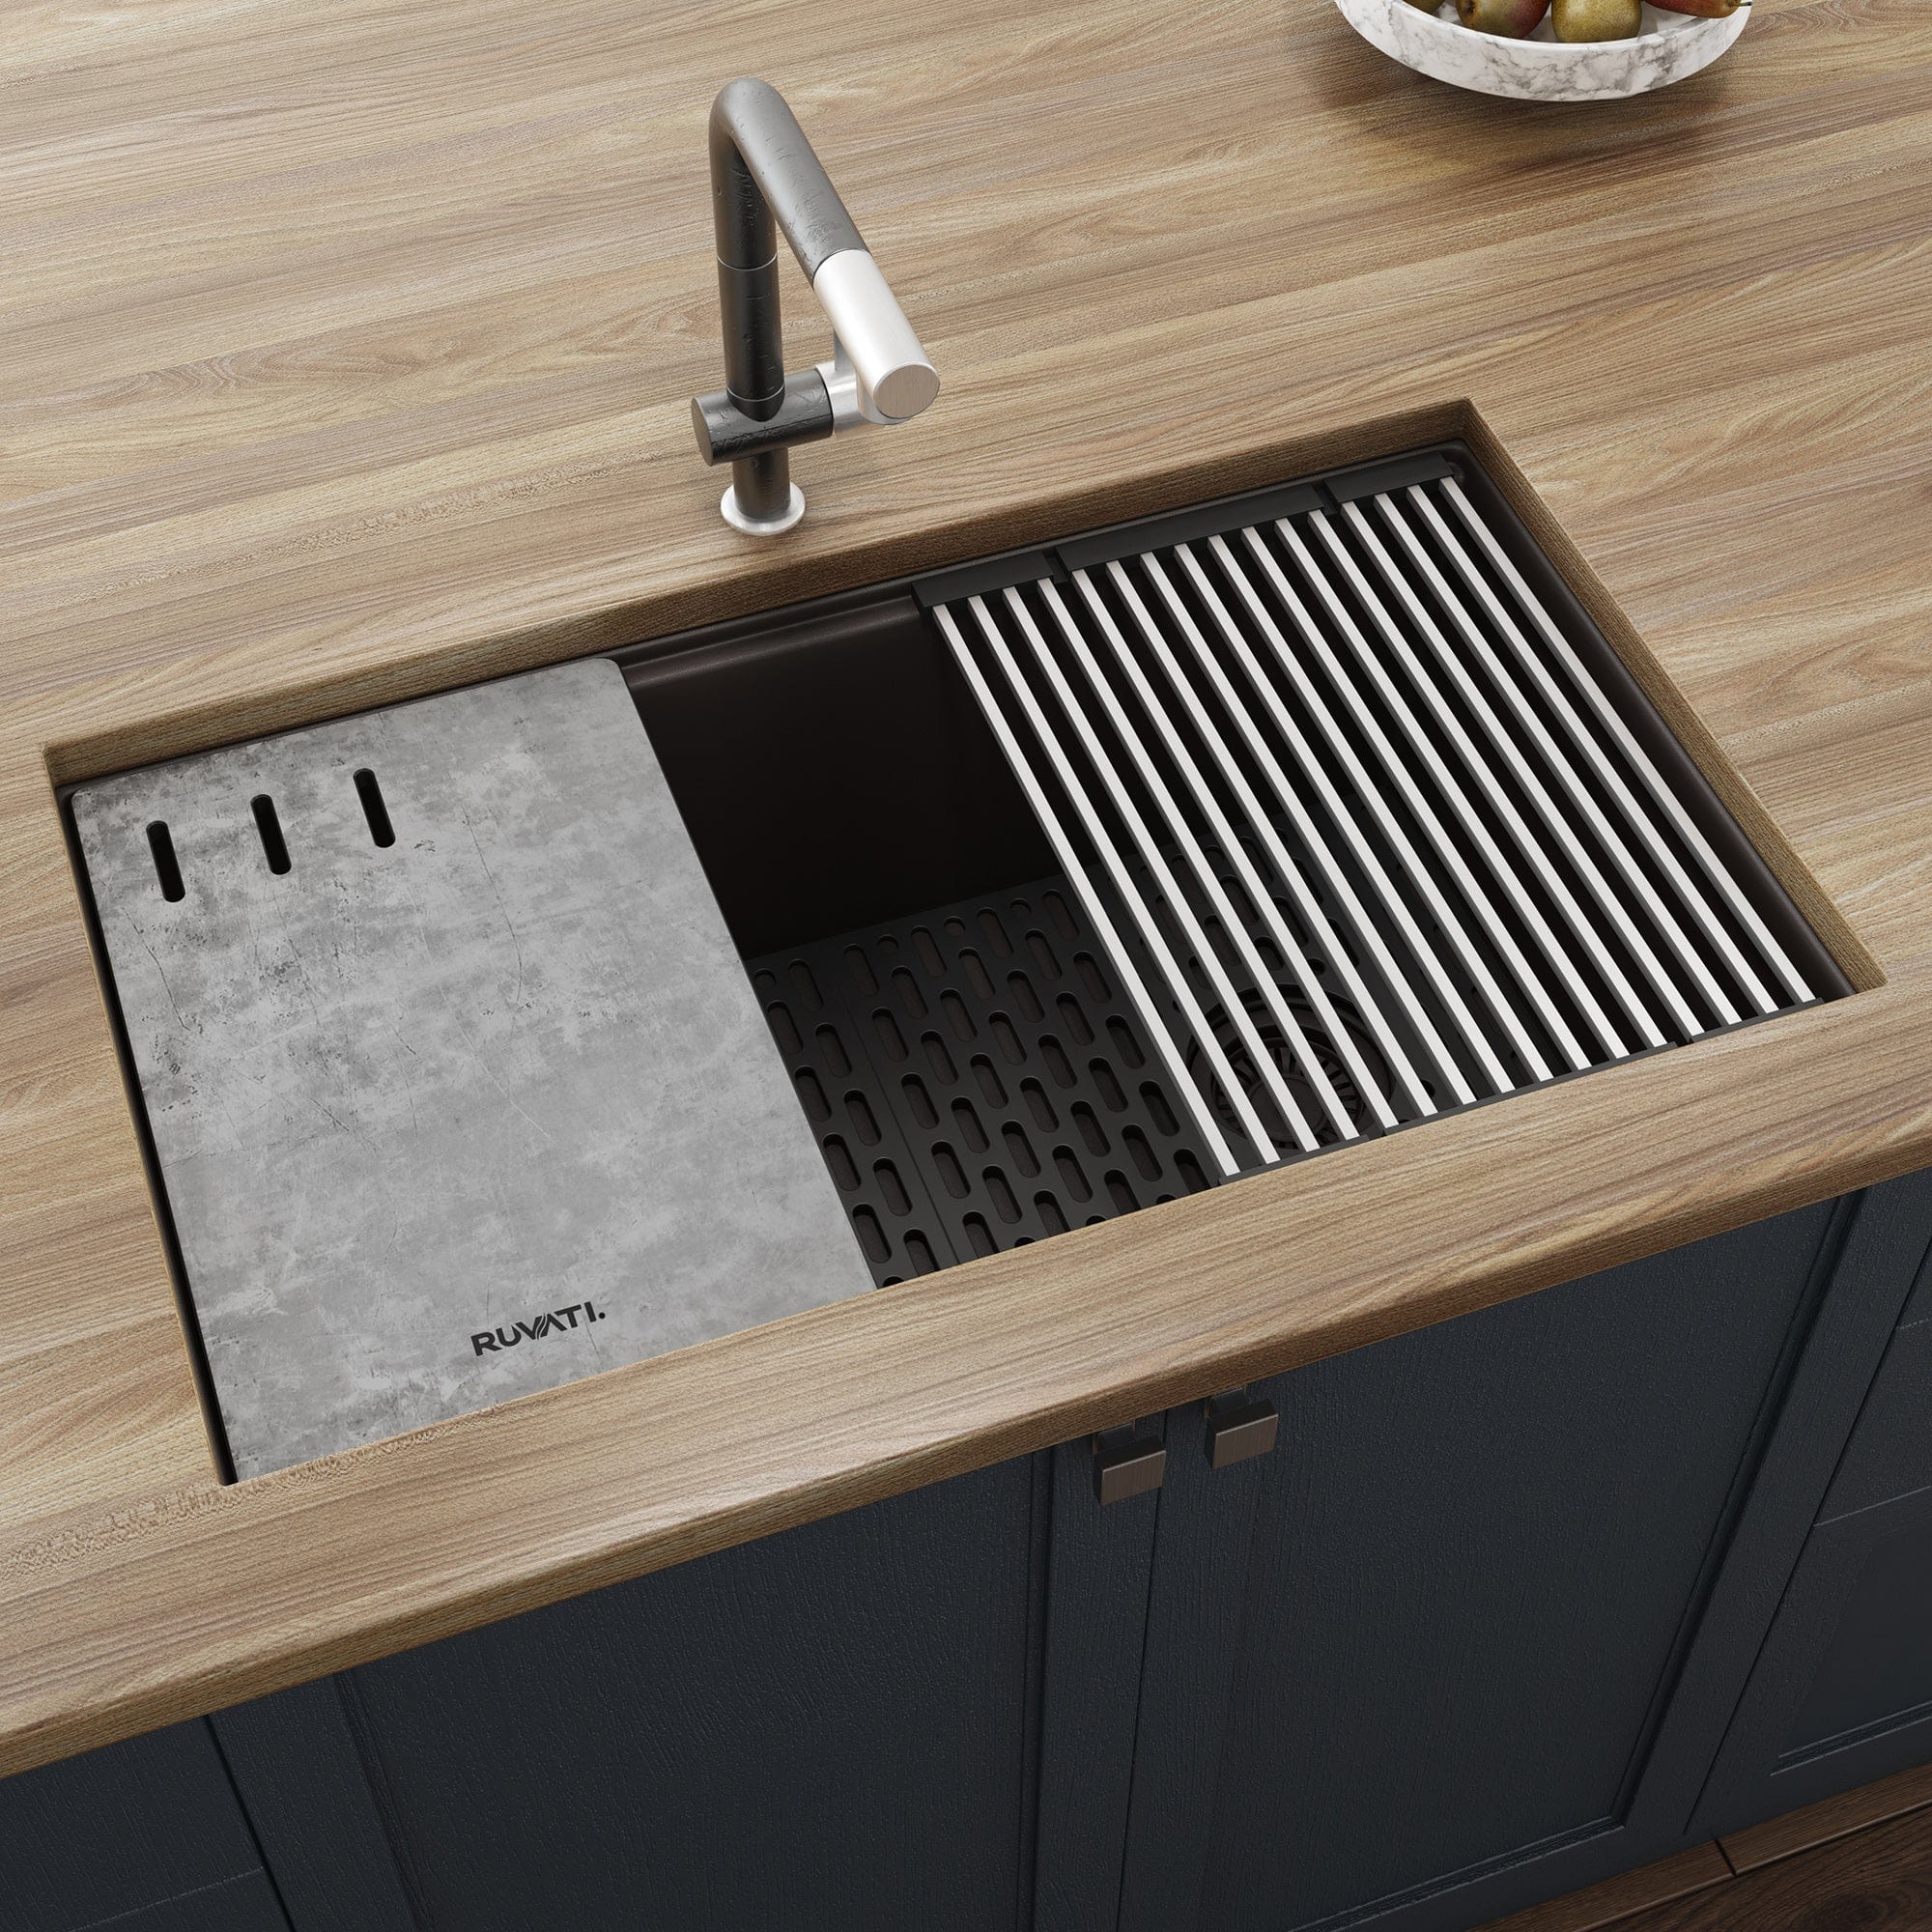 Ruvati epiStage 33" Workstation Granite Kitchen Sink RVG2302ES